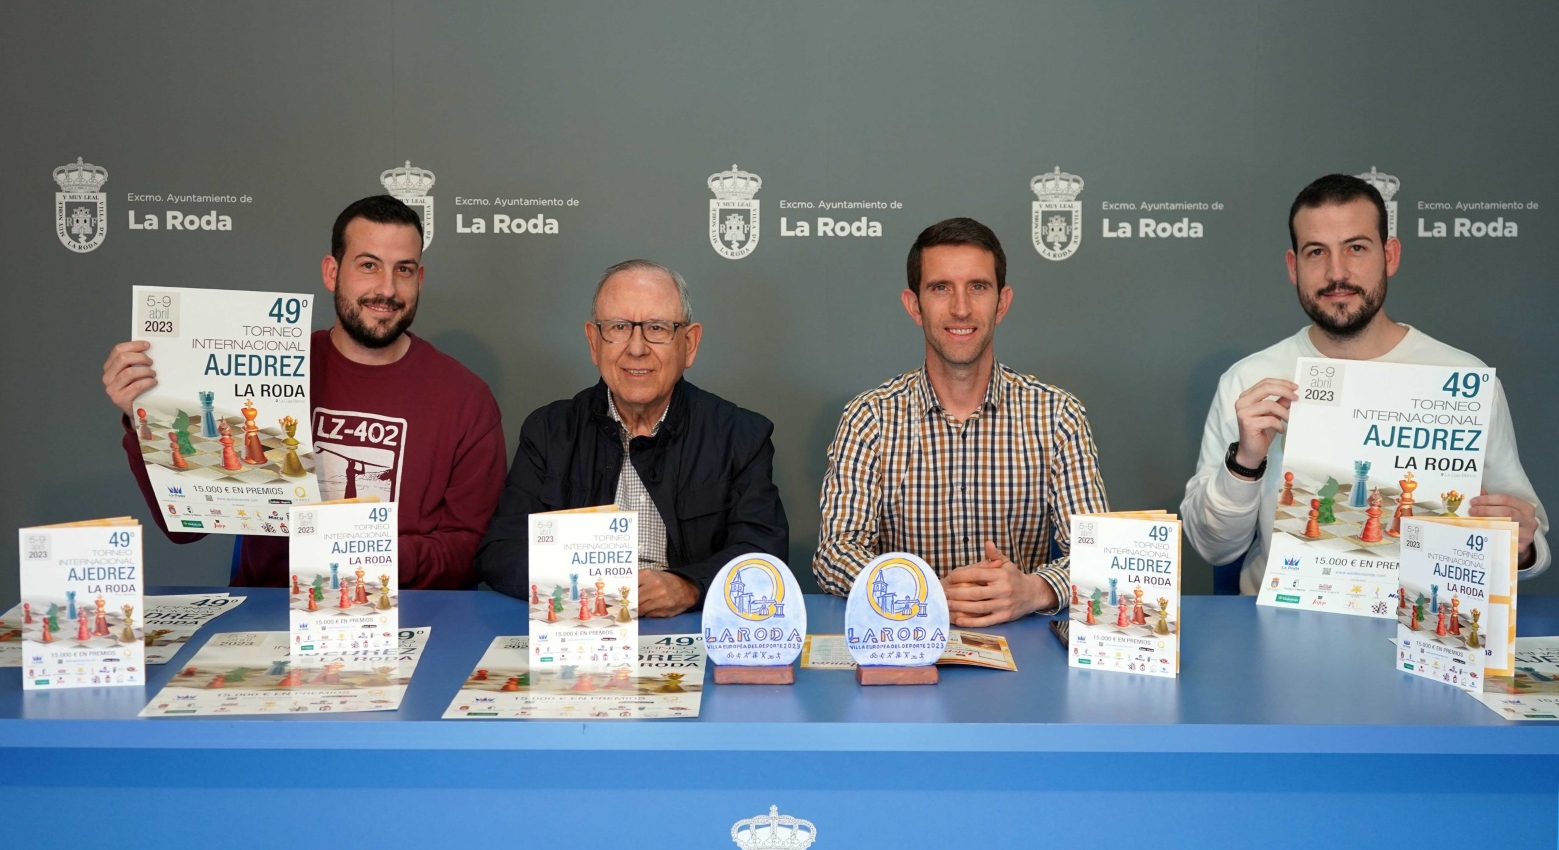 Presentan el 49º Torneo Internacional de Ajedrez en el Ayuntamiento de La Roda, Albacete.